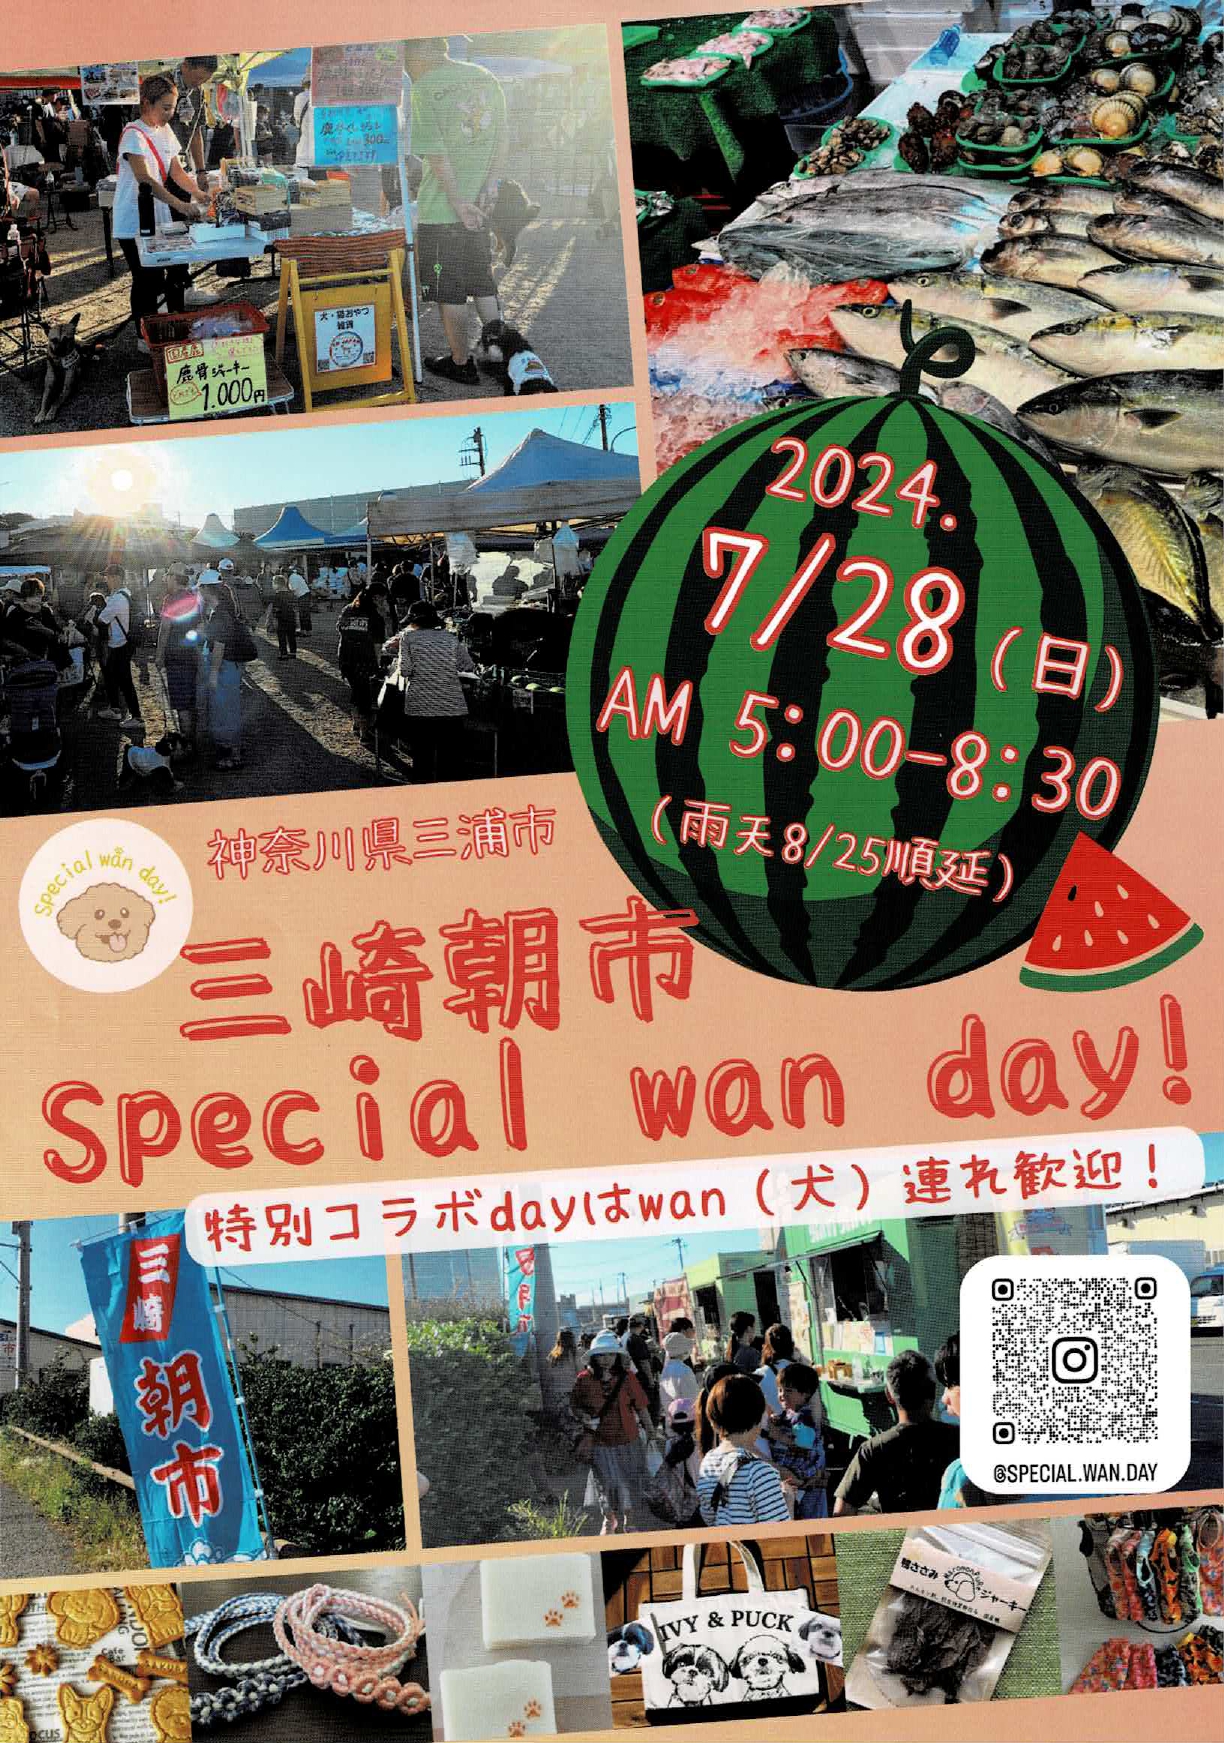 三崎市 Special wan day.